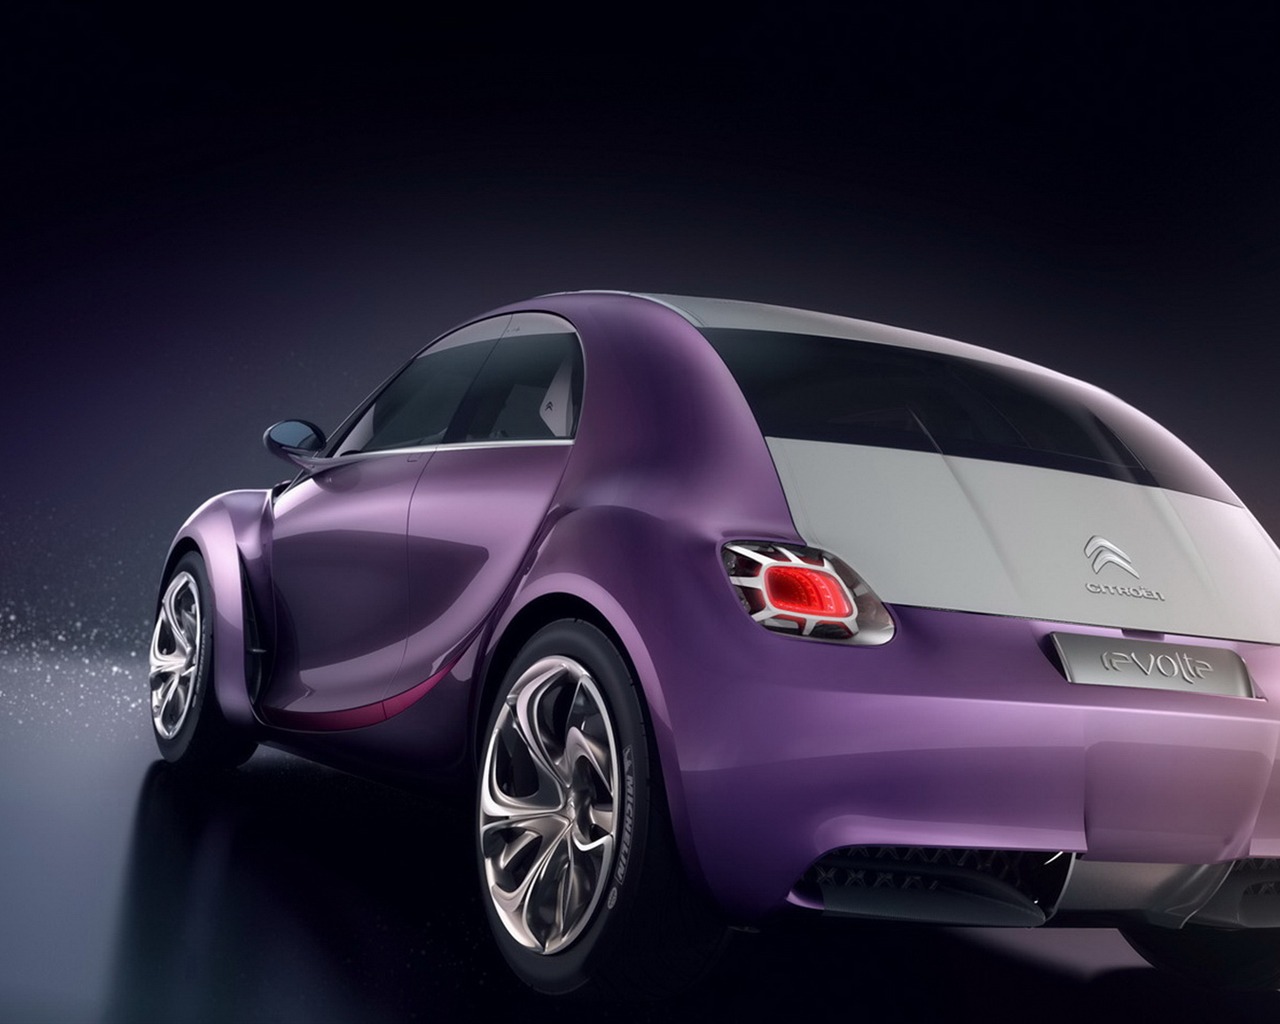 Revolte Citroen concept car wallpaper #10 - 1280x1024